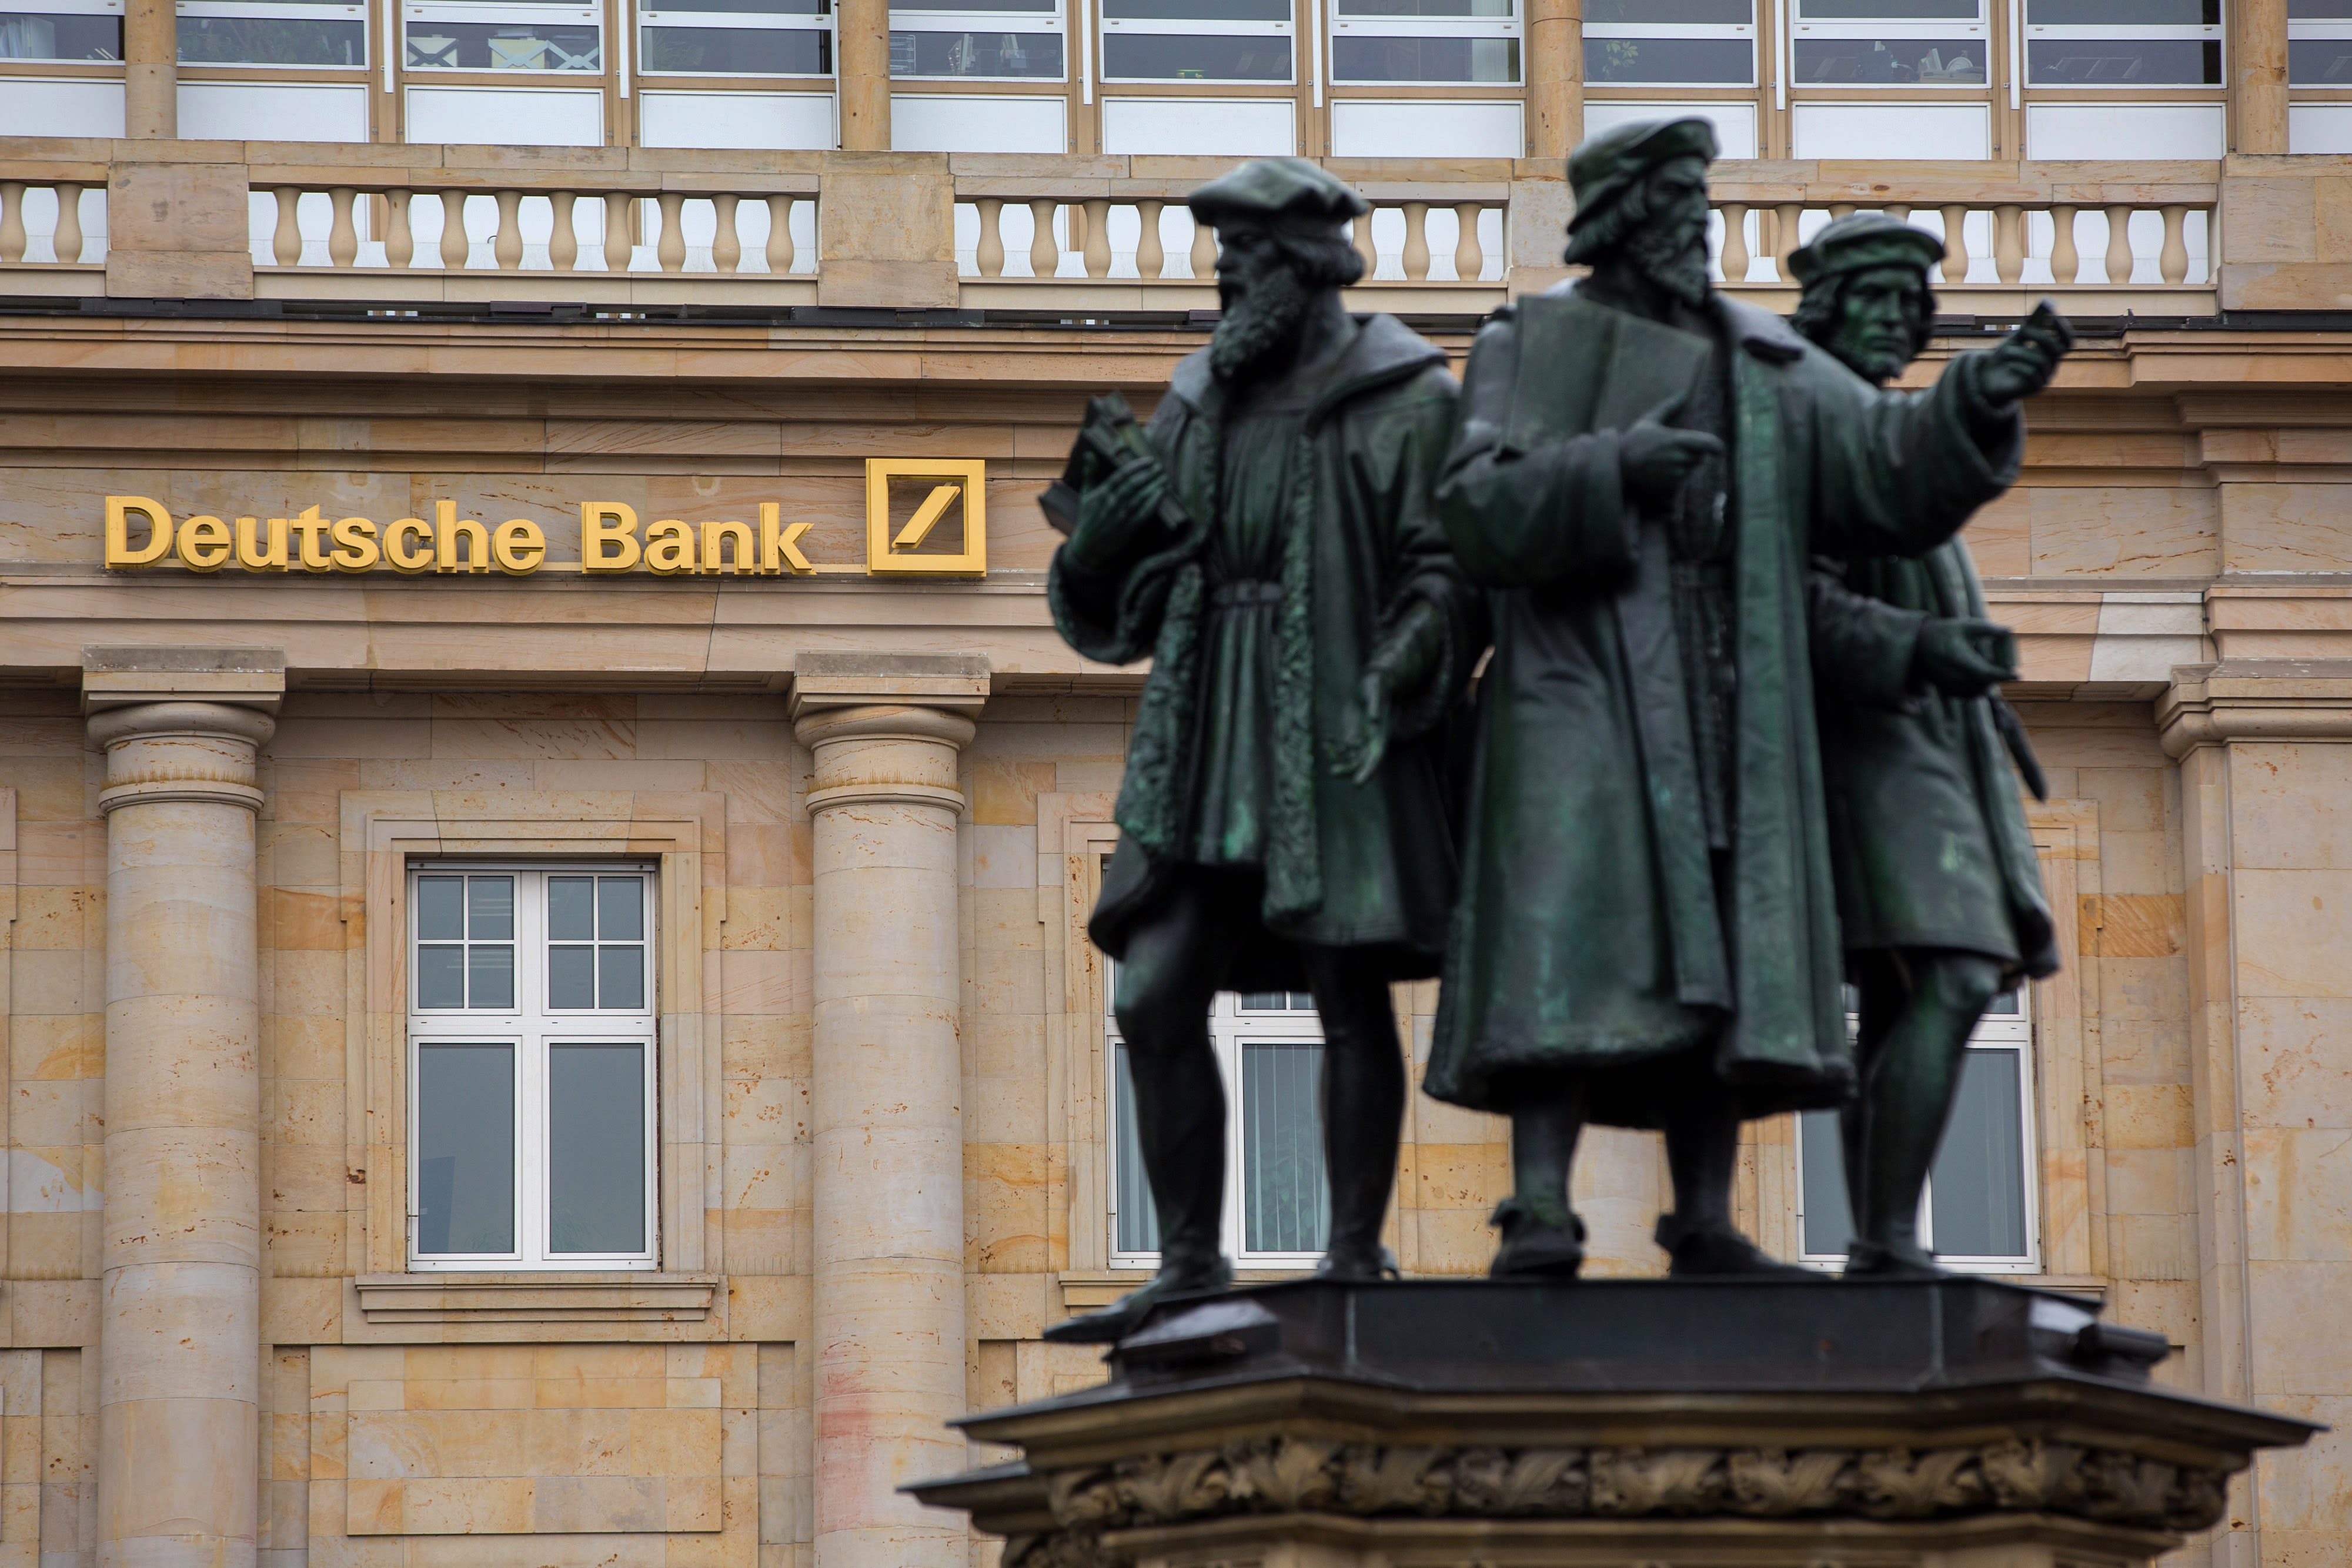 Der bank. ФРГ Deutsche Bank. Дойче банк АГ Германия. Deutsche Bank в России. Дойче банк 19 век.